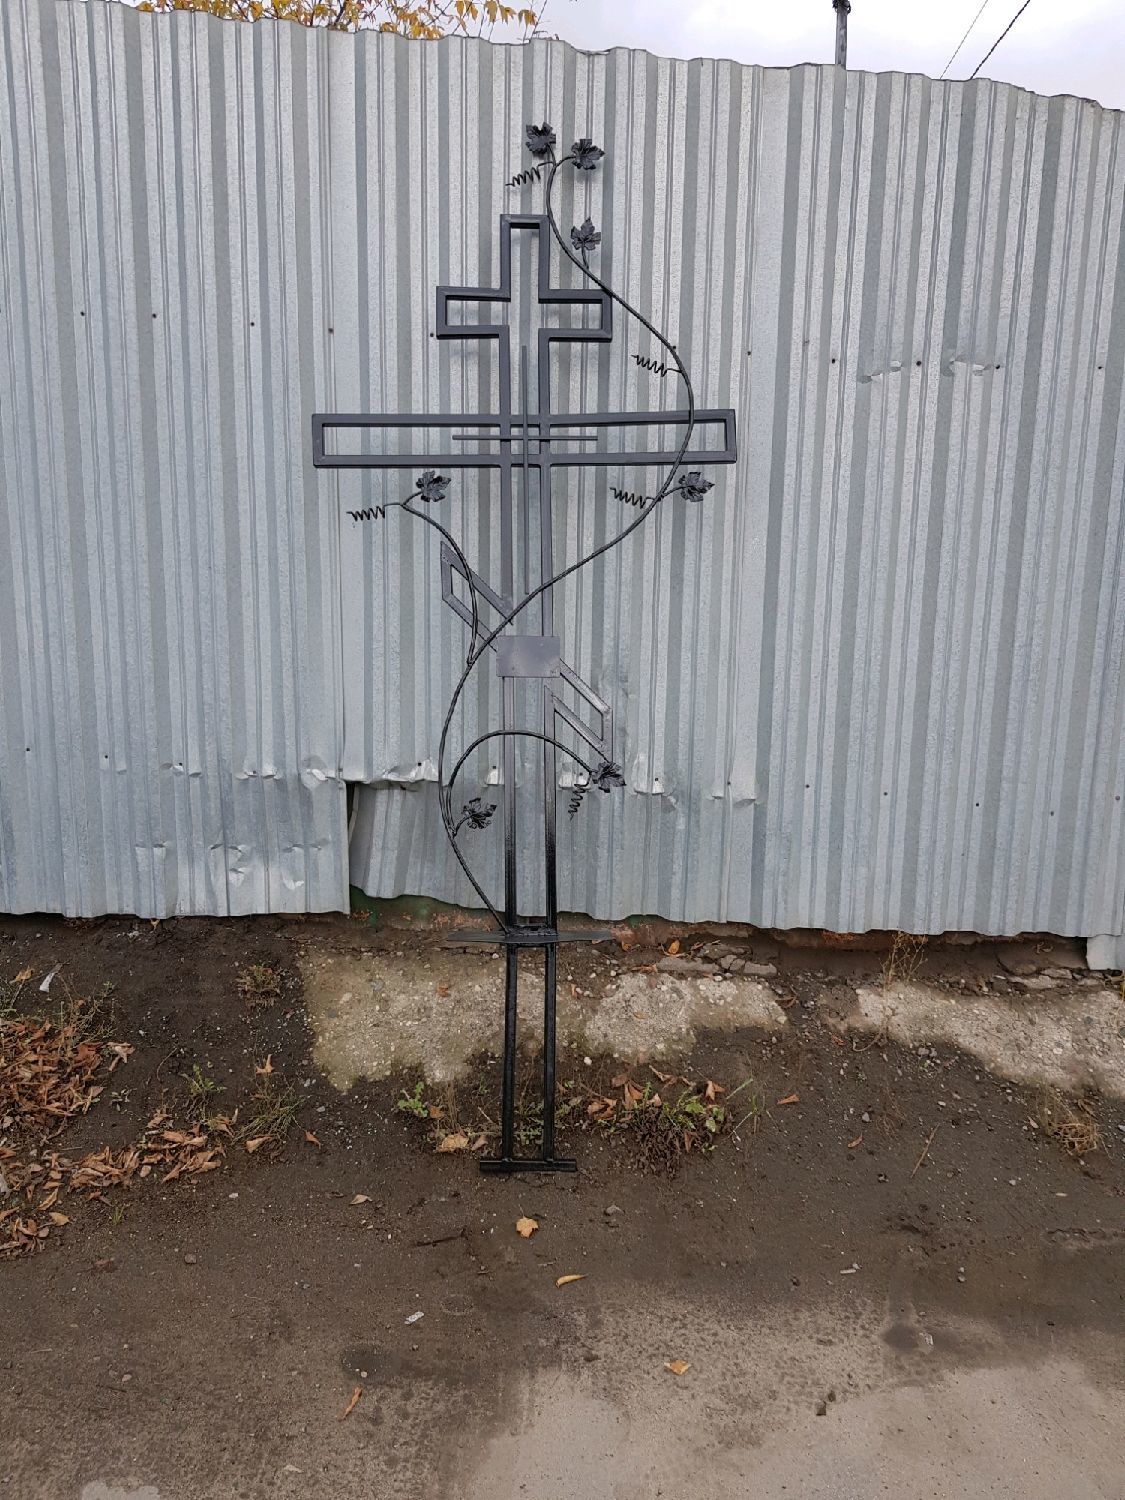 Фото на металле на крест москва